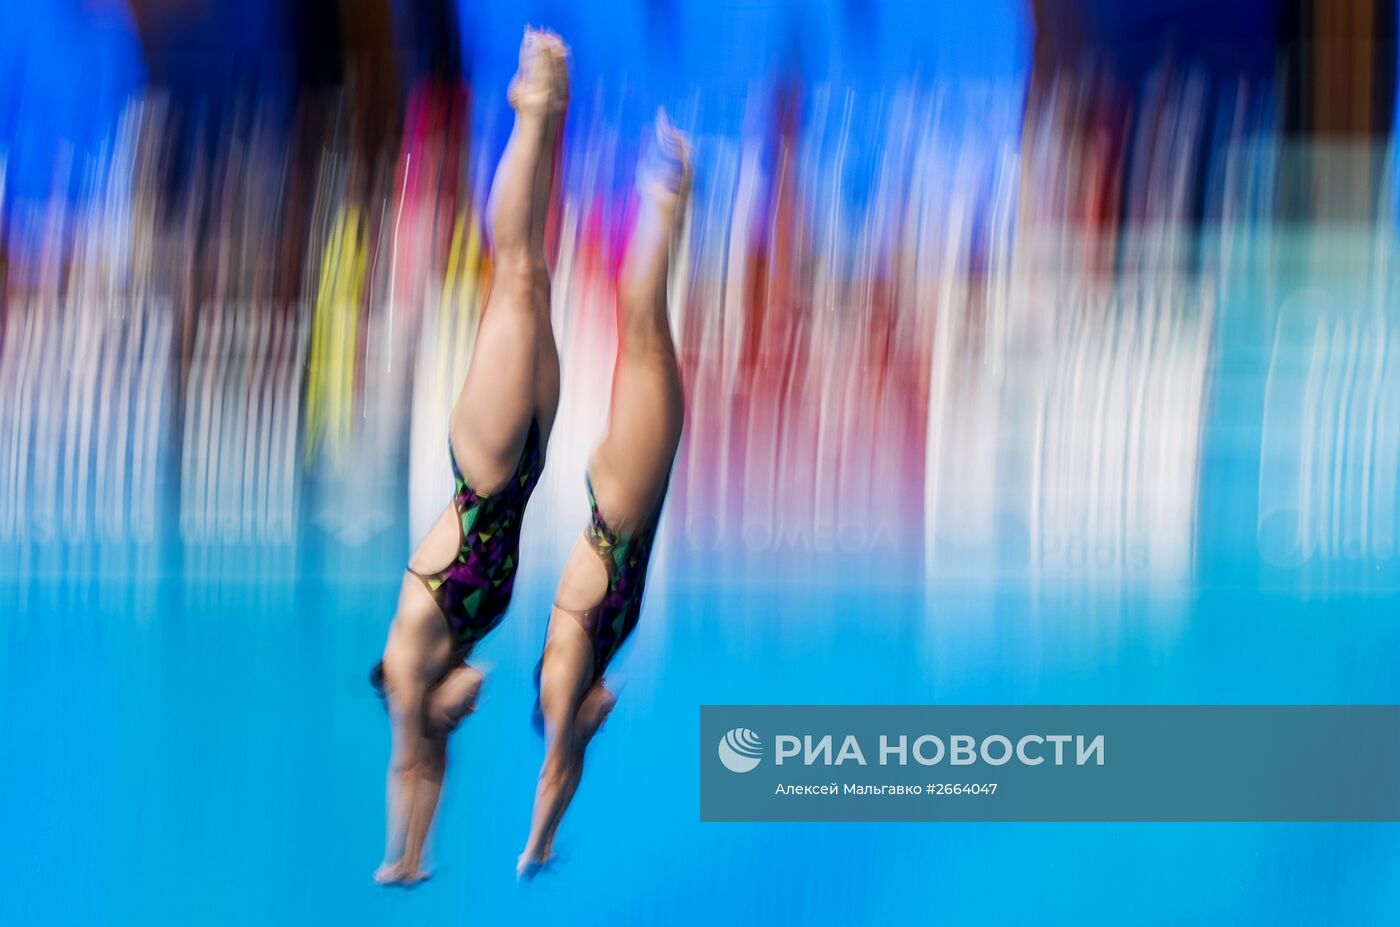 Чемпионат мира FINA 2015. Синхронные прыжки в воду. Женщины. Трамплин 3м. Предварительный раунд